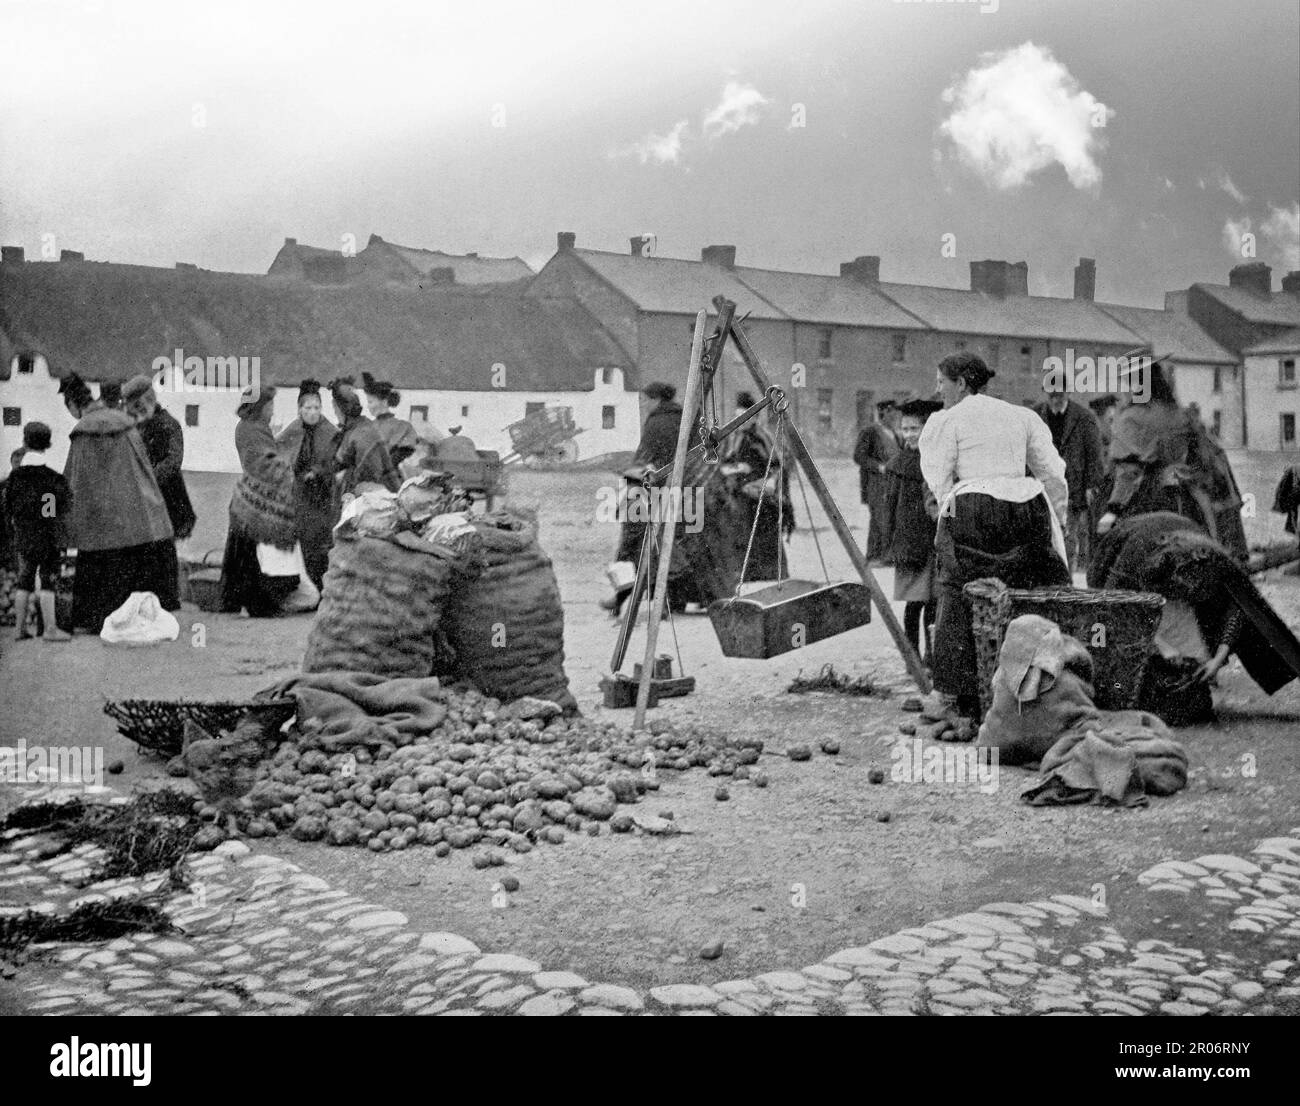 Una vista di fine 19th ° secolo del mercato della patata, in Bolton Square, a Drogheda, Contea di Louth sulla costa orientale dell'Irlanda. I locali possono essere visti chiacchierare e comprare lo spud ubiquitario. Era anche la sede di altri mercati che vendevano burro, carne, pesce e cavalli. Foto Stock